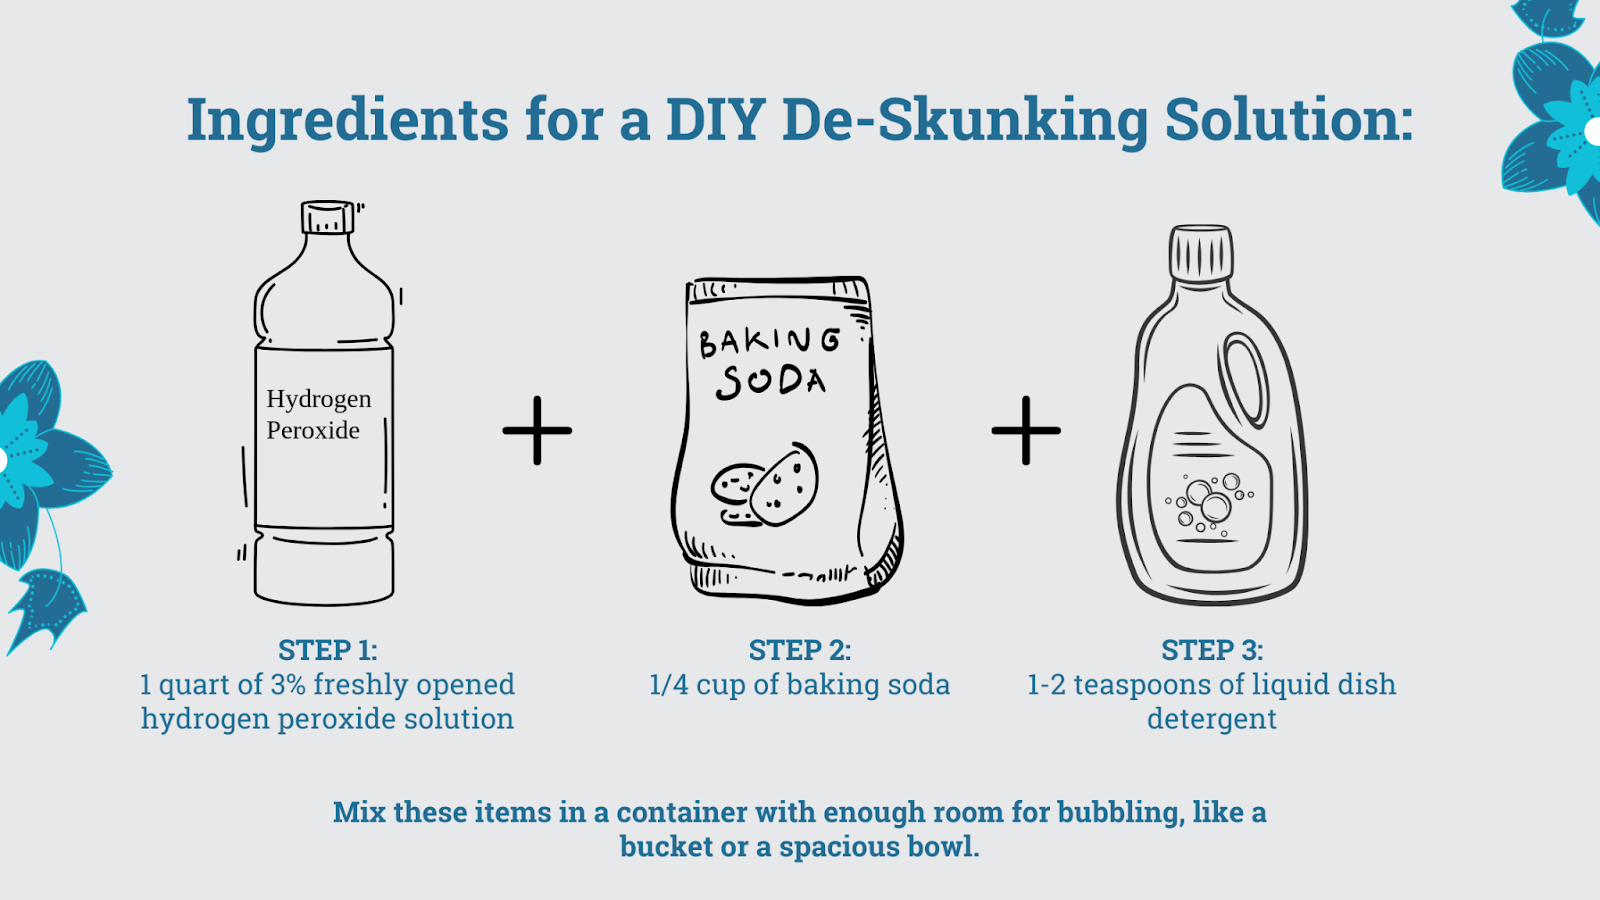 Ingredients for a DIY de-skunking solution